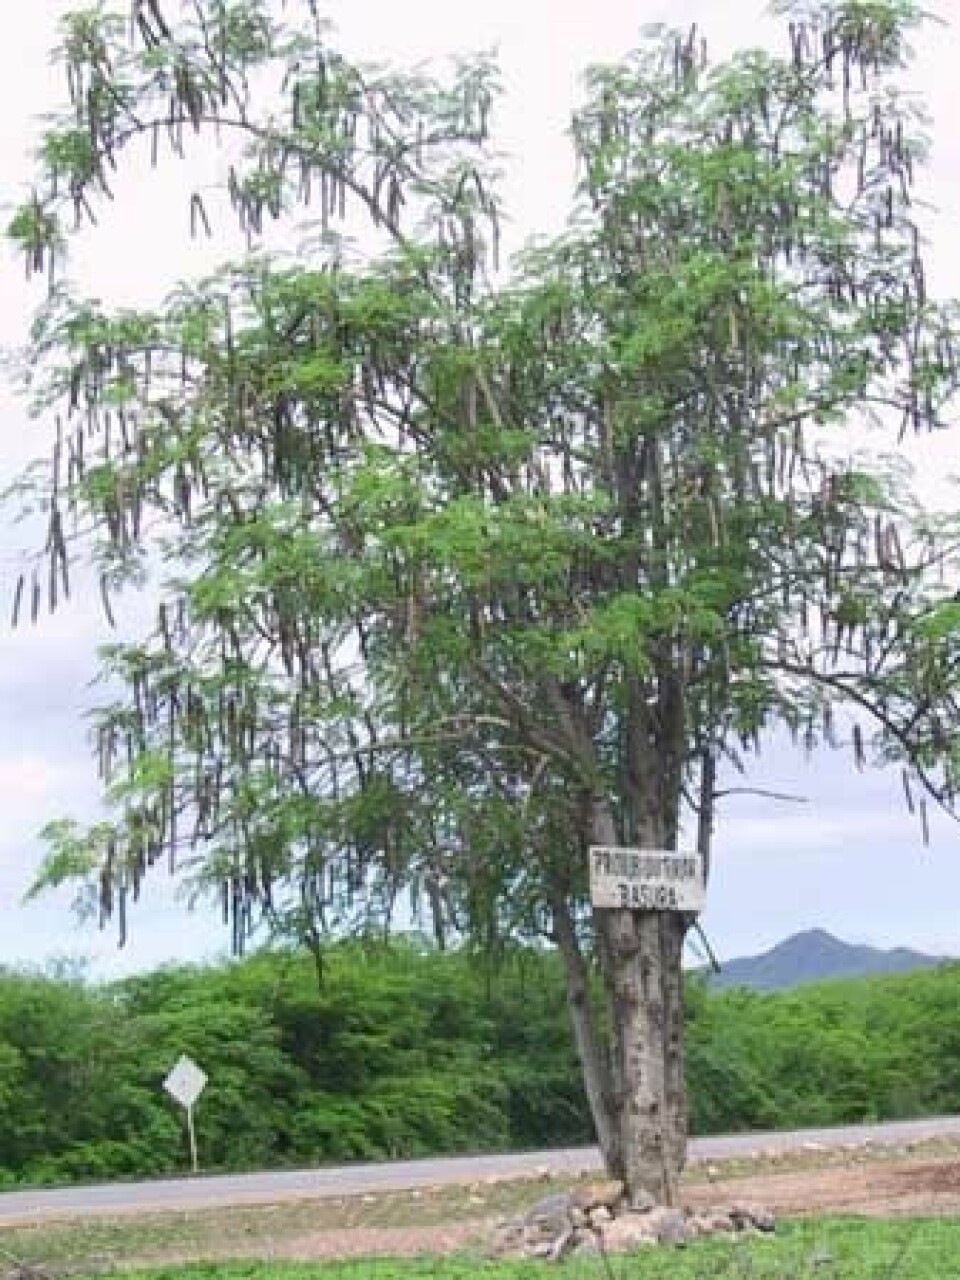 Moringa-treet kommer opprinnelig fra nordvest i India. (Foto: Wikimedia Commons)